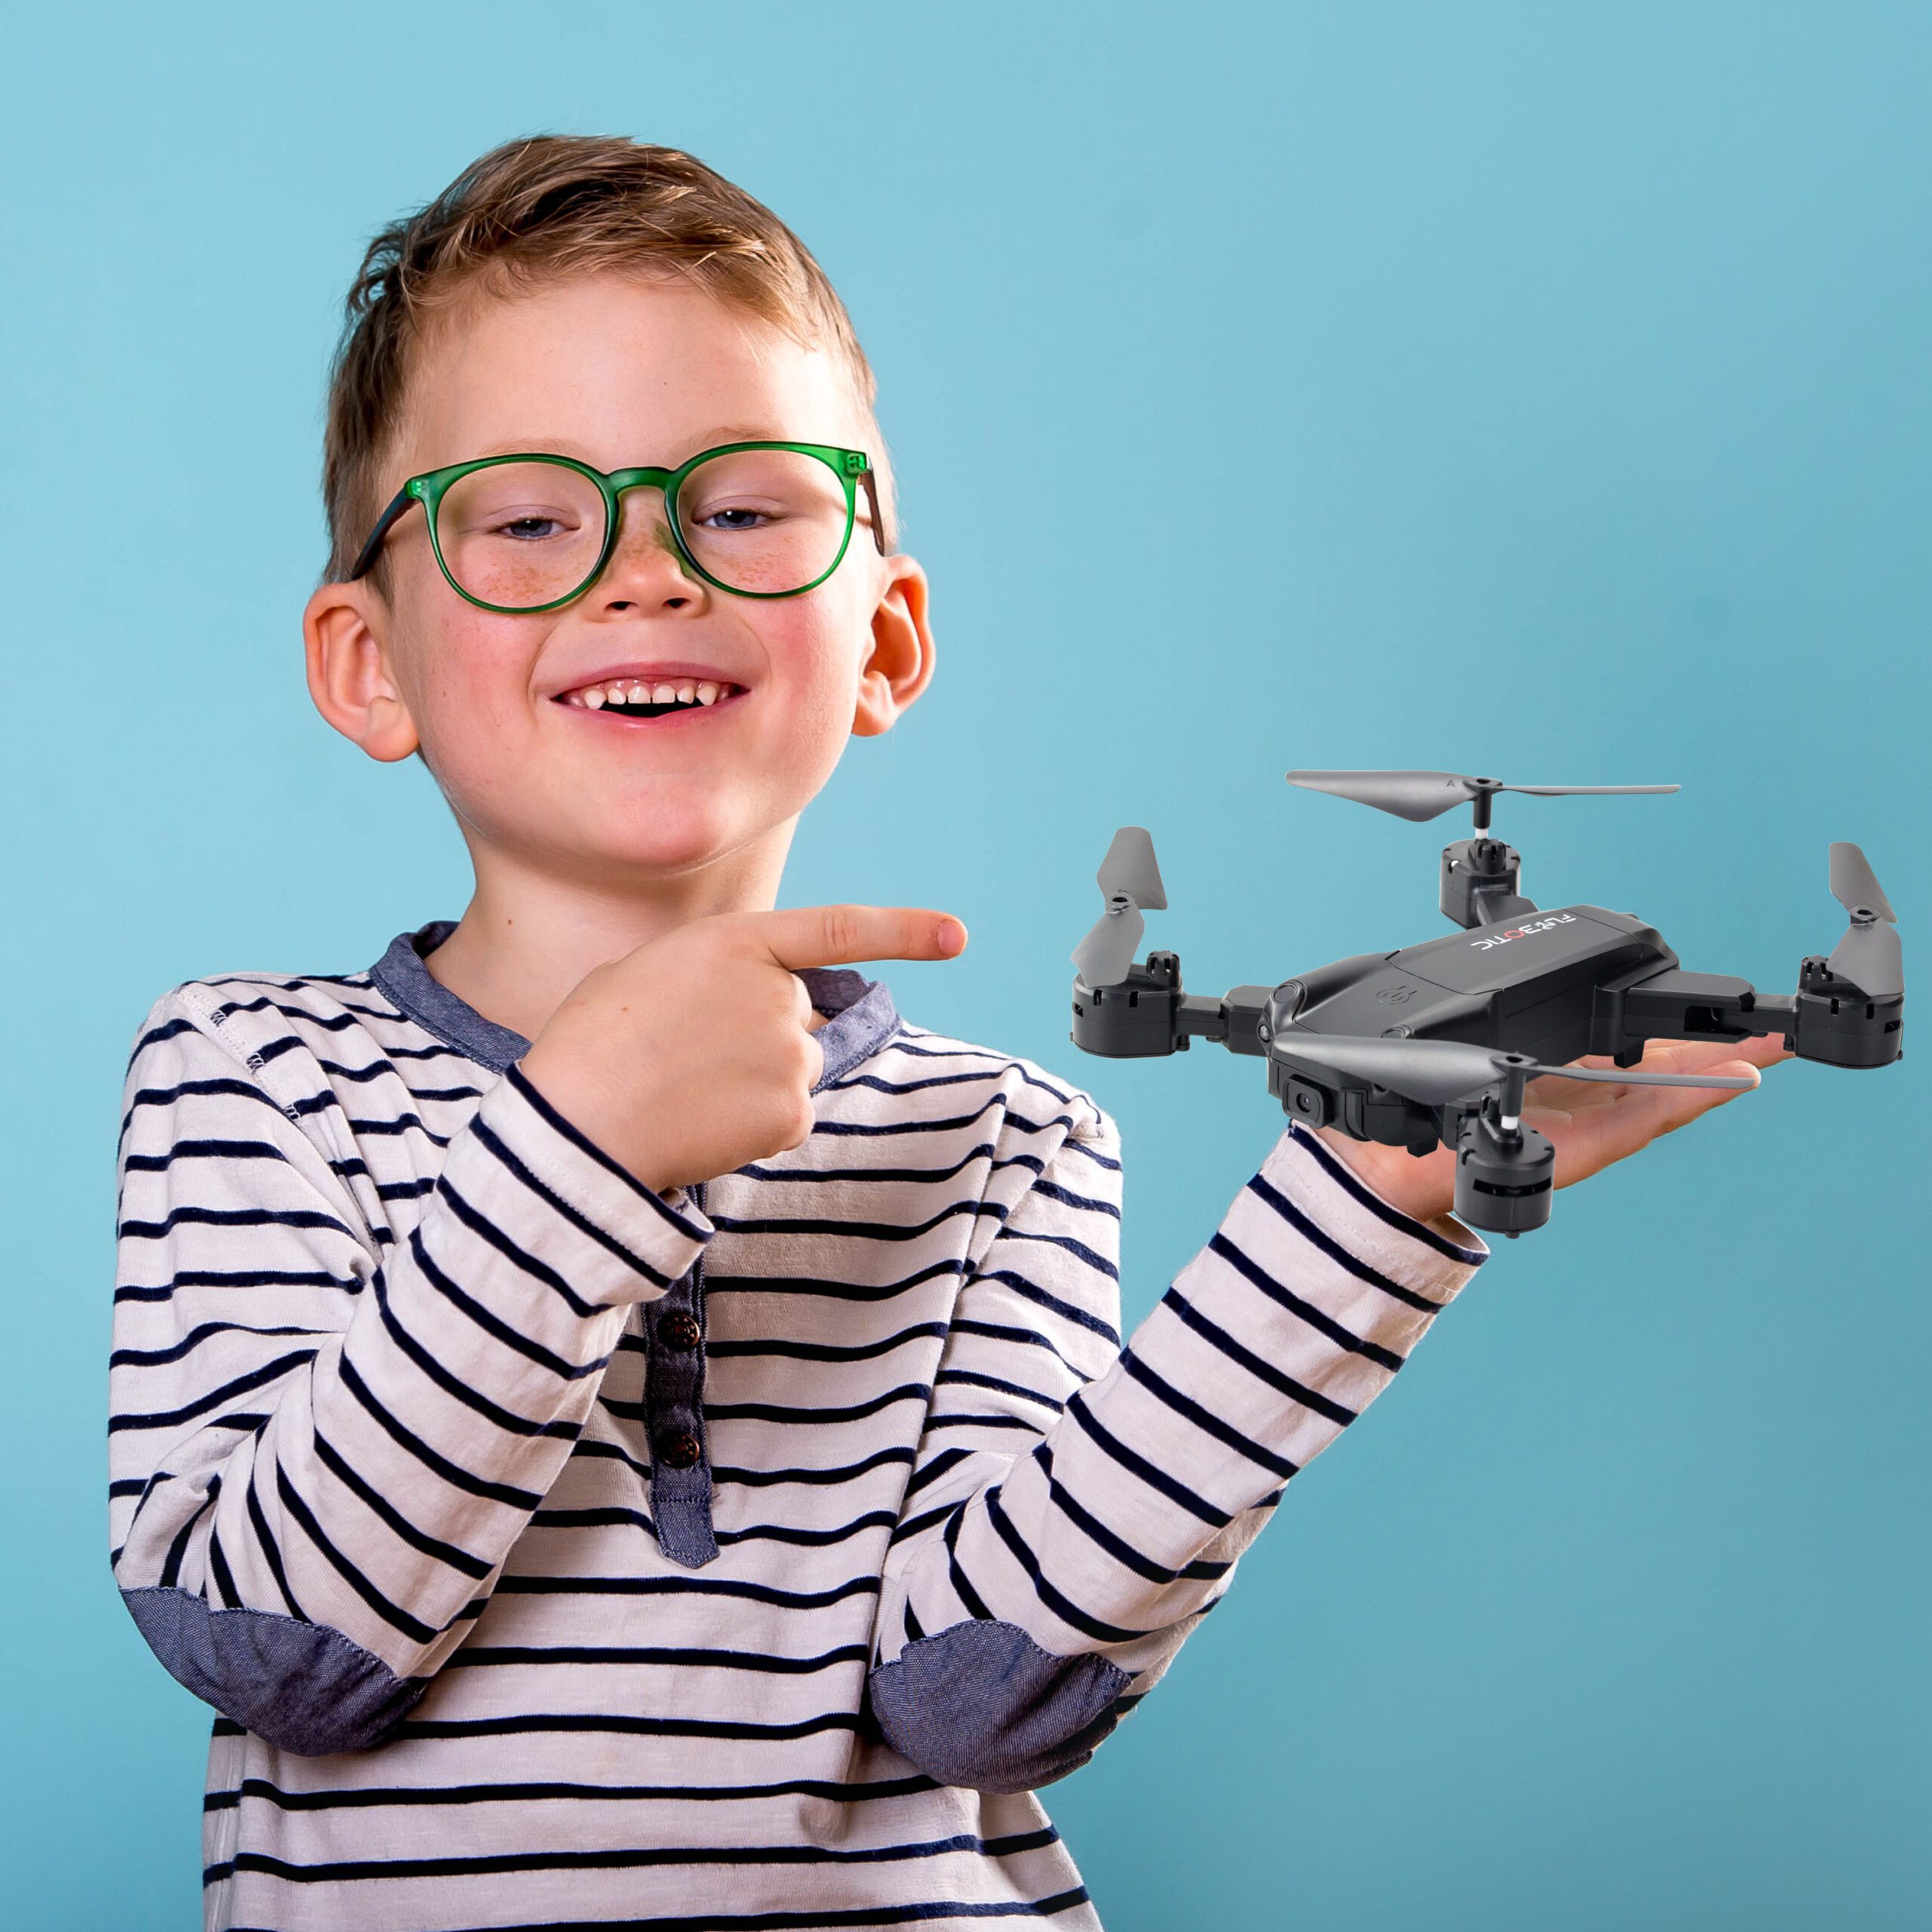 Flybotic by Silverlit - Stunt Drone enfant Cascadeur - Loopings